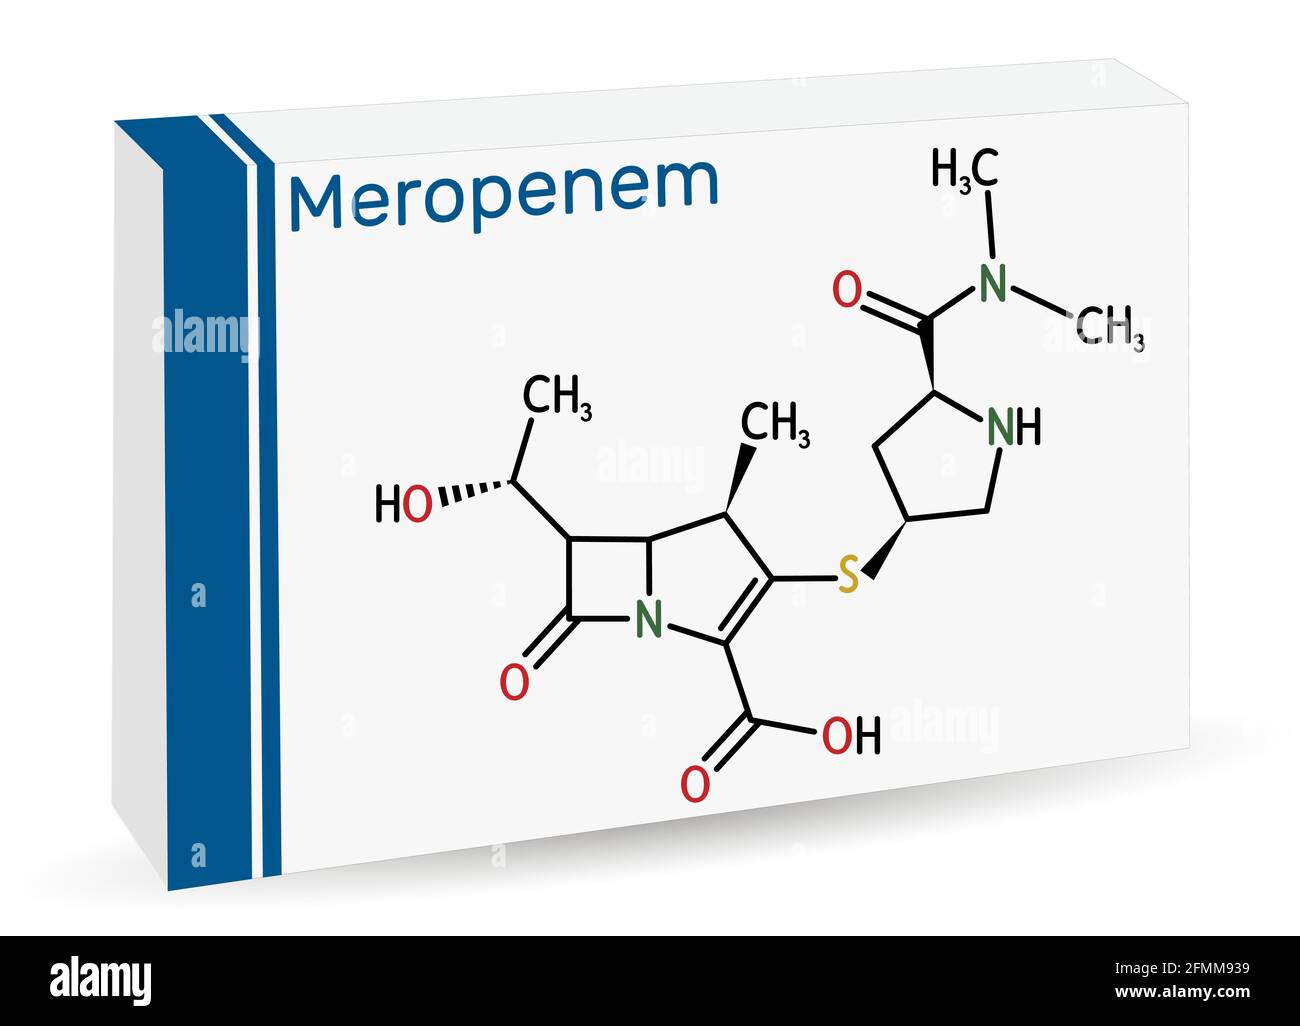 Molécule de meropenem. Il s'agit d'un antibiotique carbapénème à large spectre. Formule chimique squelettique . Emballage en papier pour médicaments. Illustration vectorielle Illustration de Vecteur